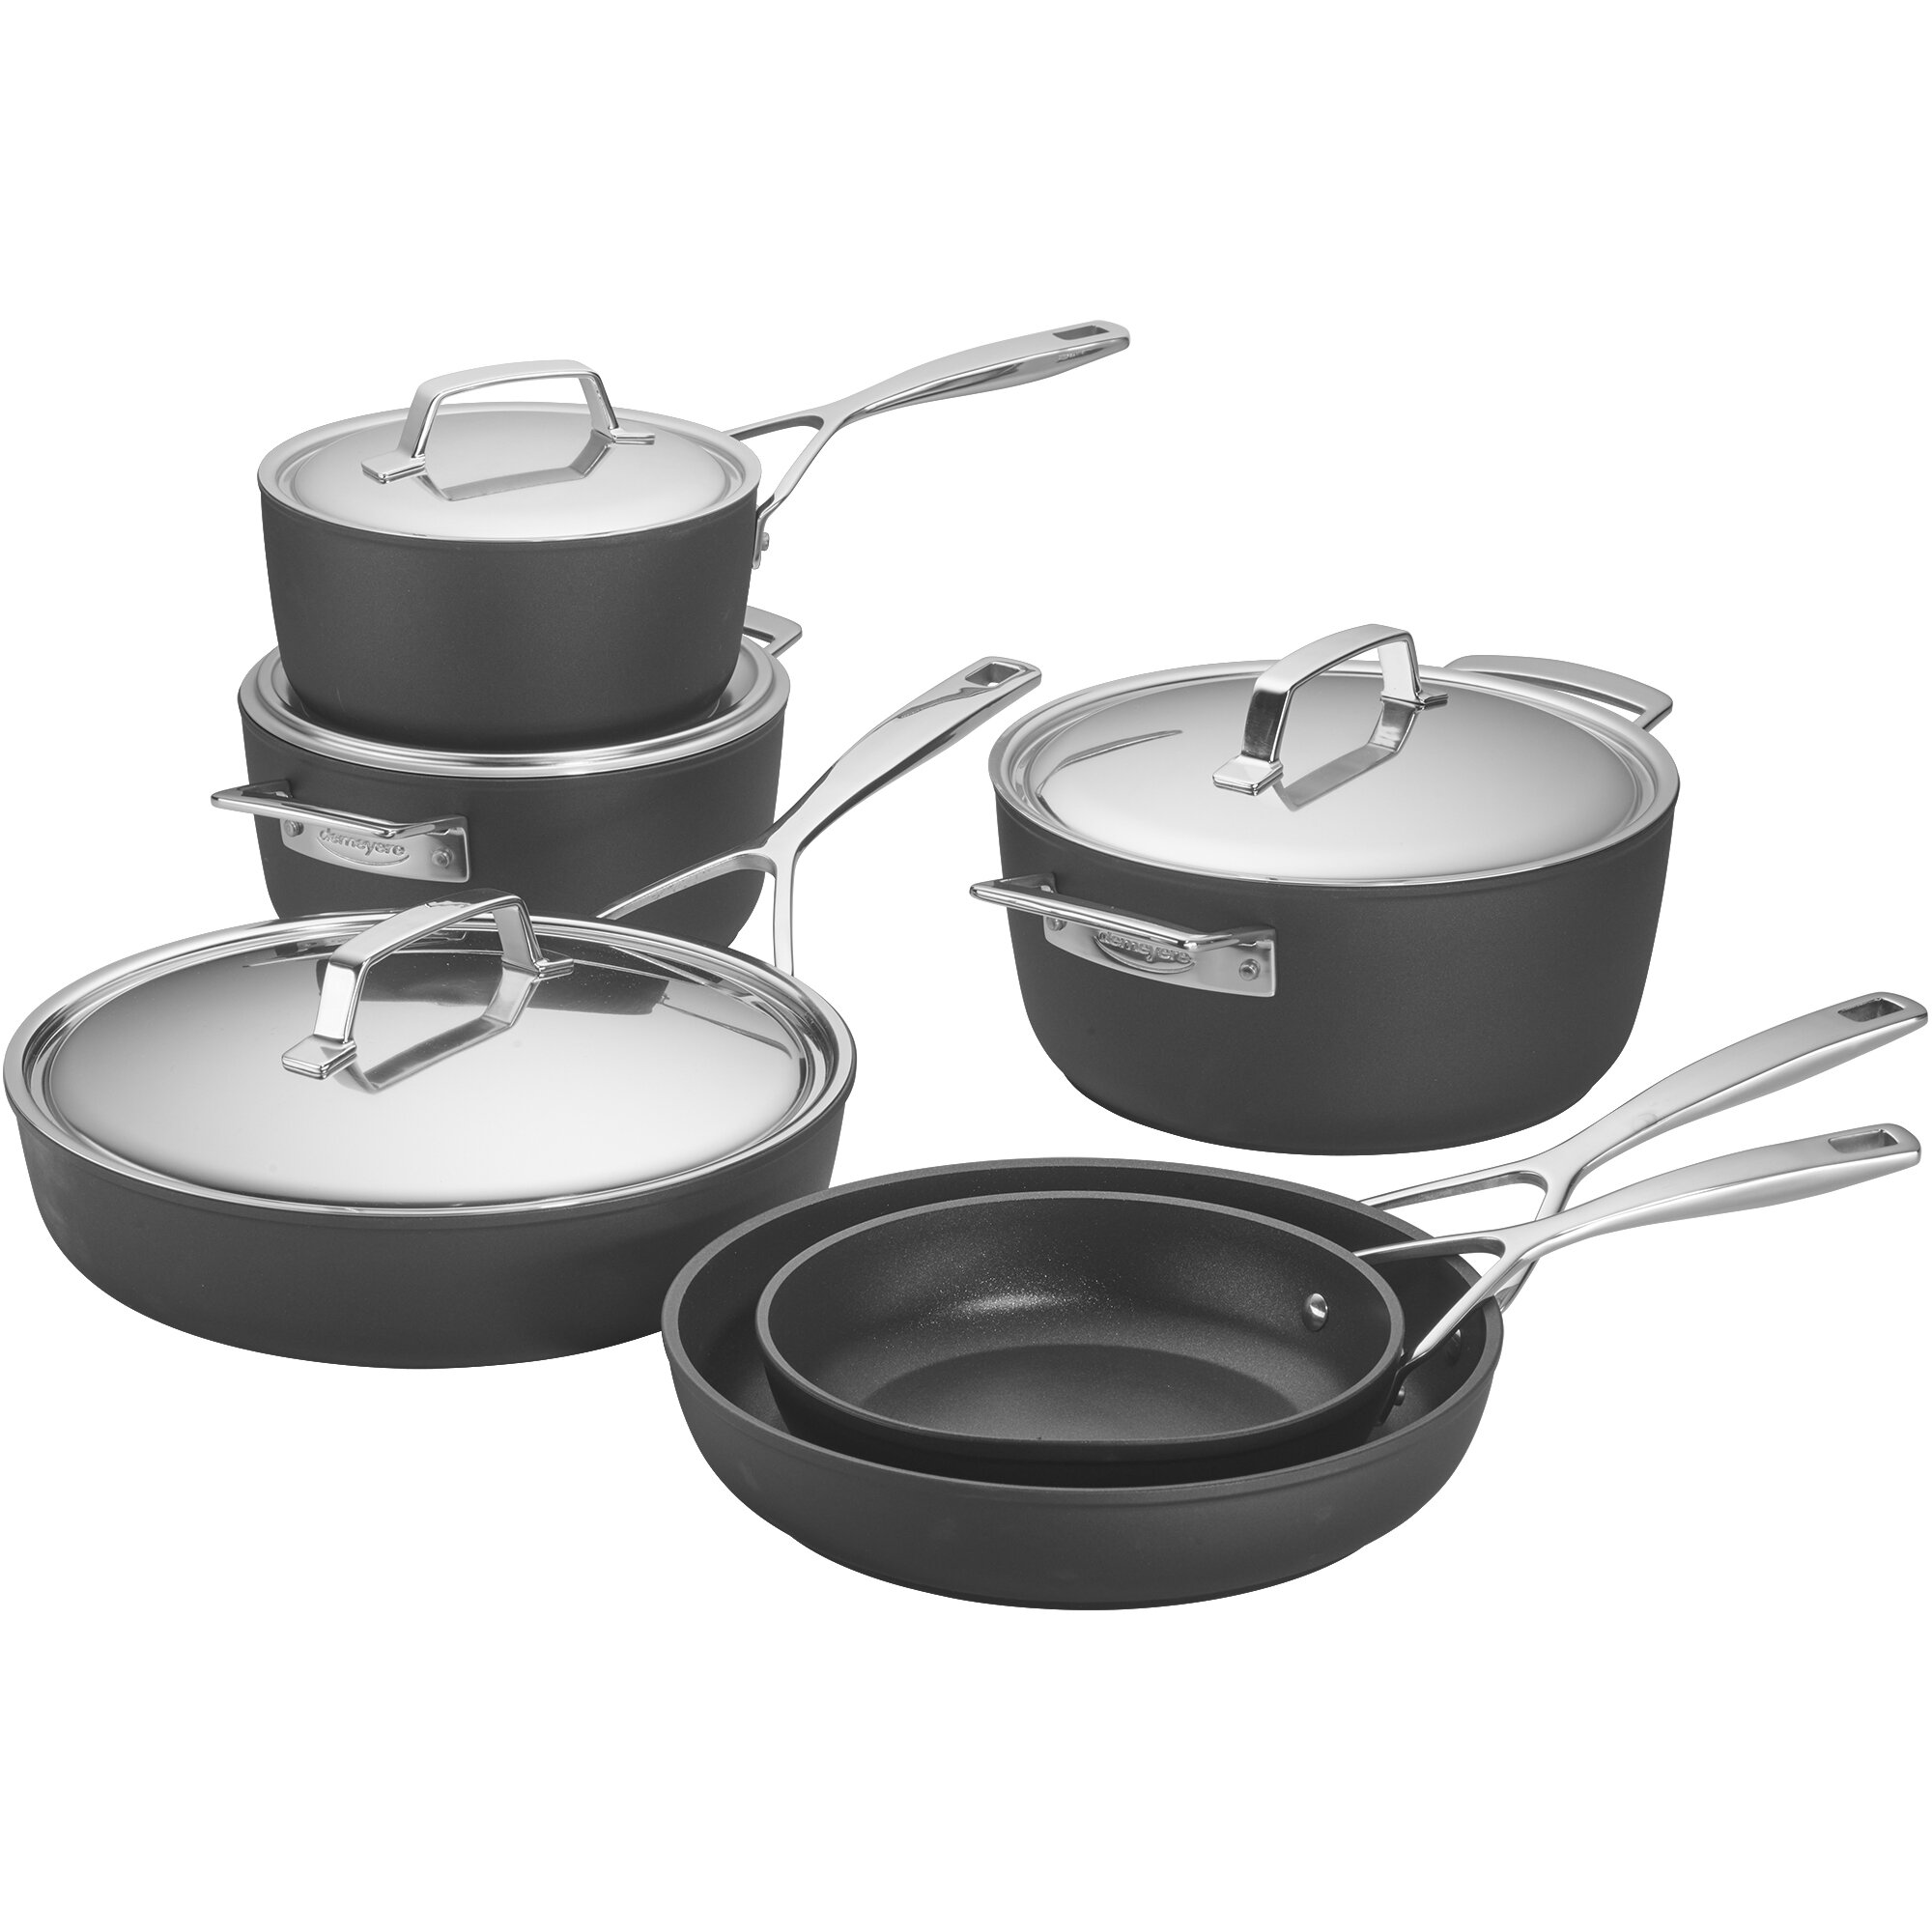 https://assets.wfcdn.com/im/61246226/compr-r85/1924/192470188/demeyere-alupro-10-piece-aluminum-nonstick-cookware-set.jpg